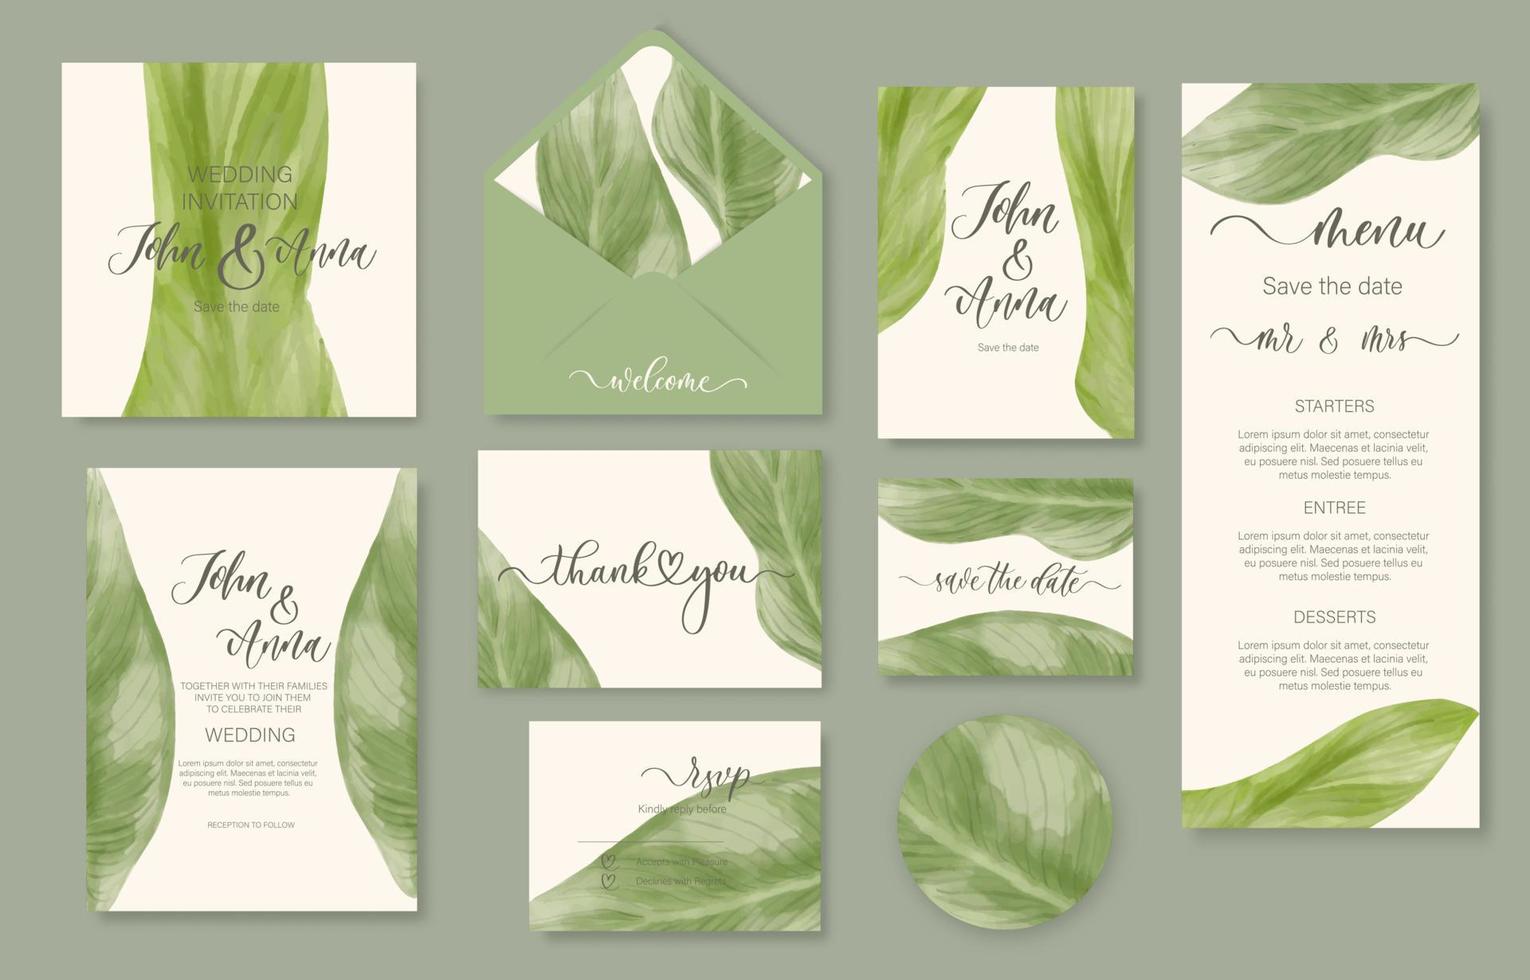 invitación floral acuarela de boda, gracias, respuesta, menú, rsvp con hojas verdes suavemente acuarelas. vector